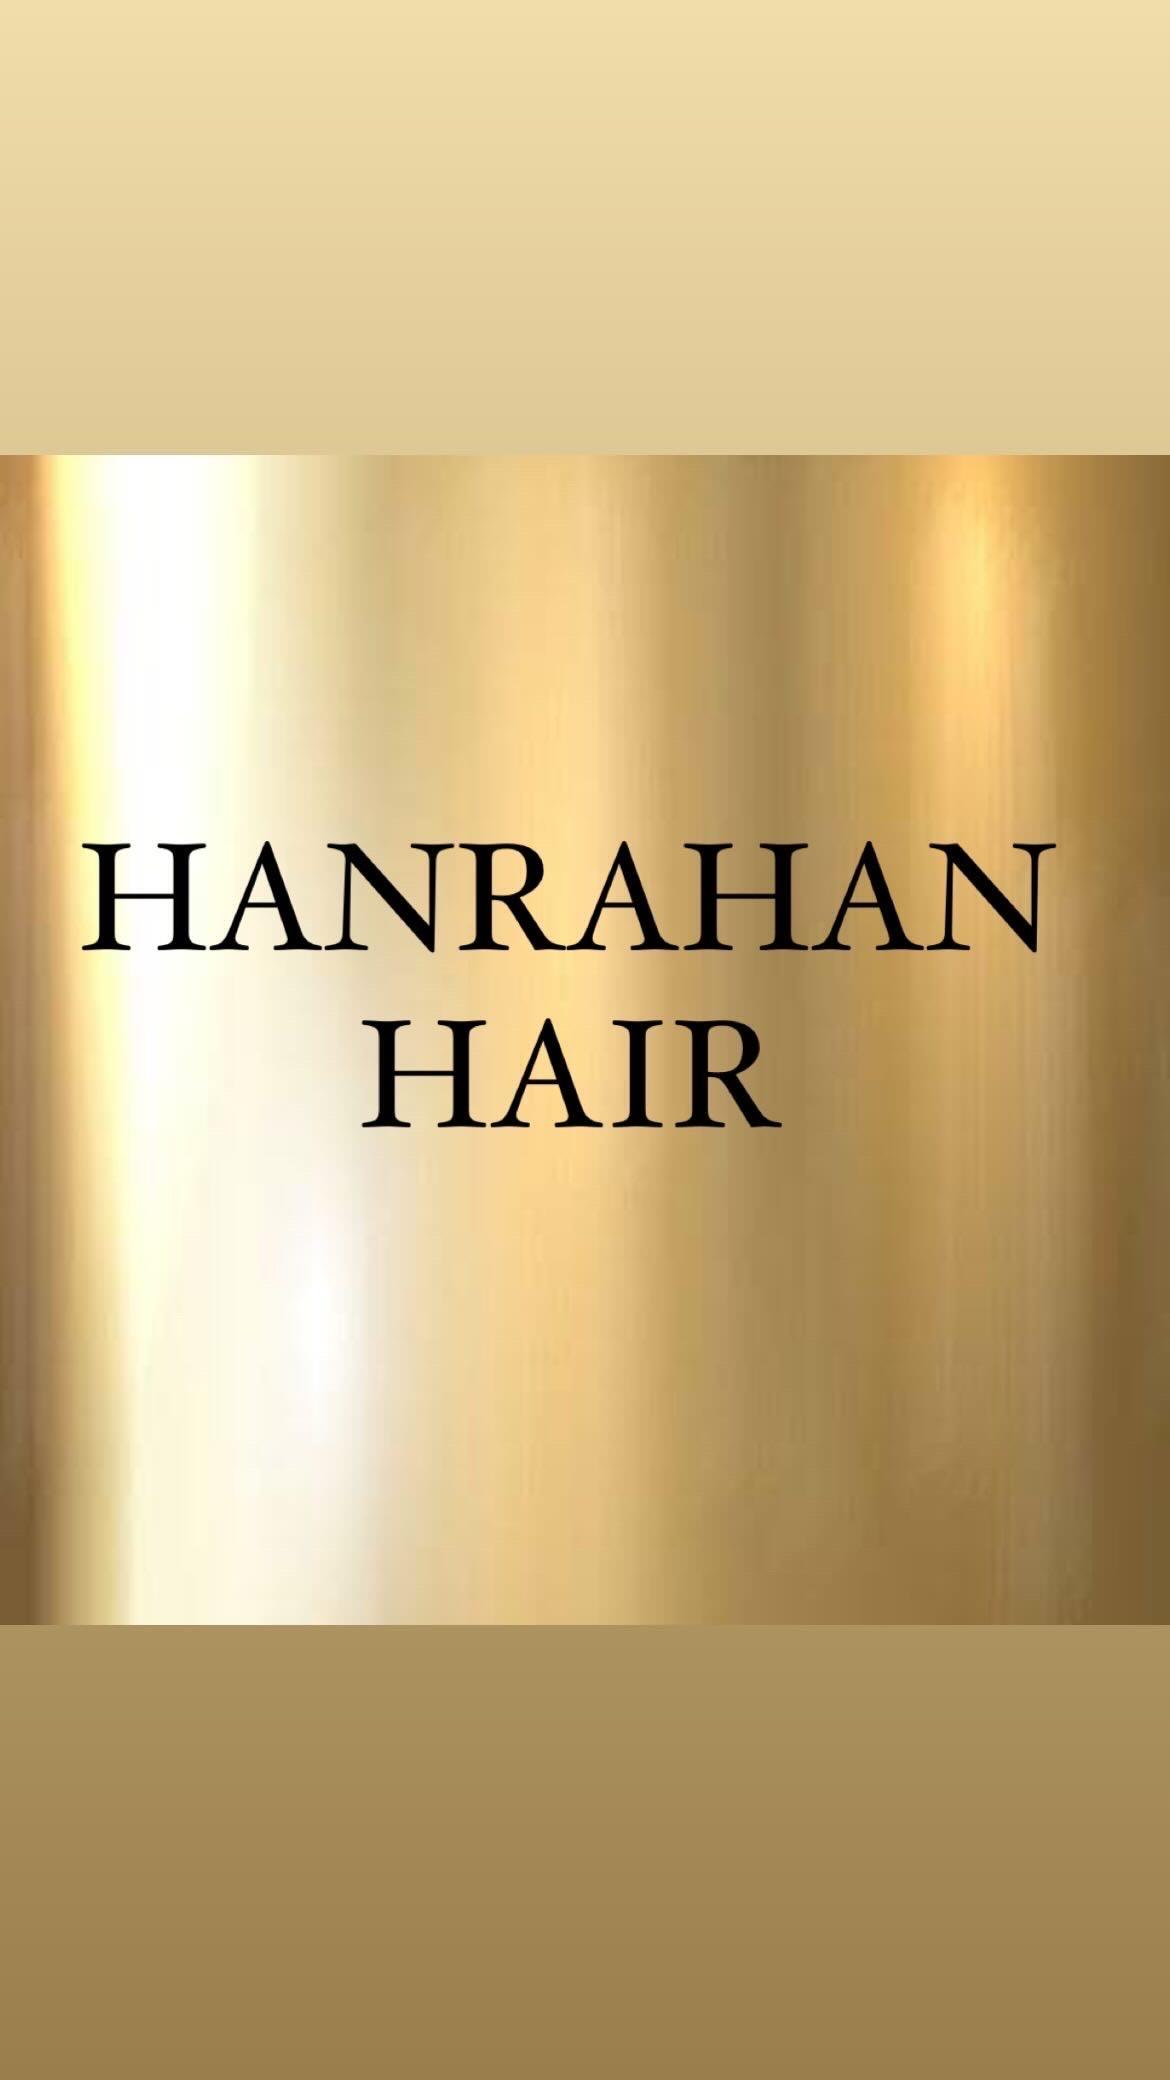 HANRAHAN HAIR